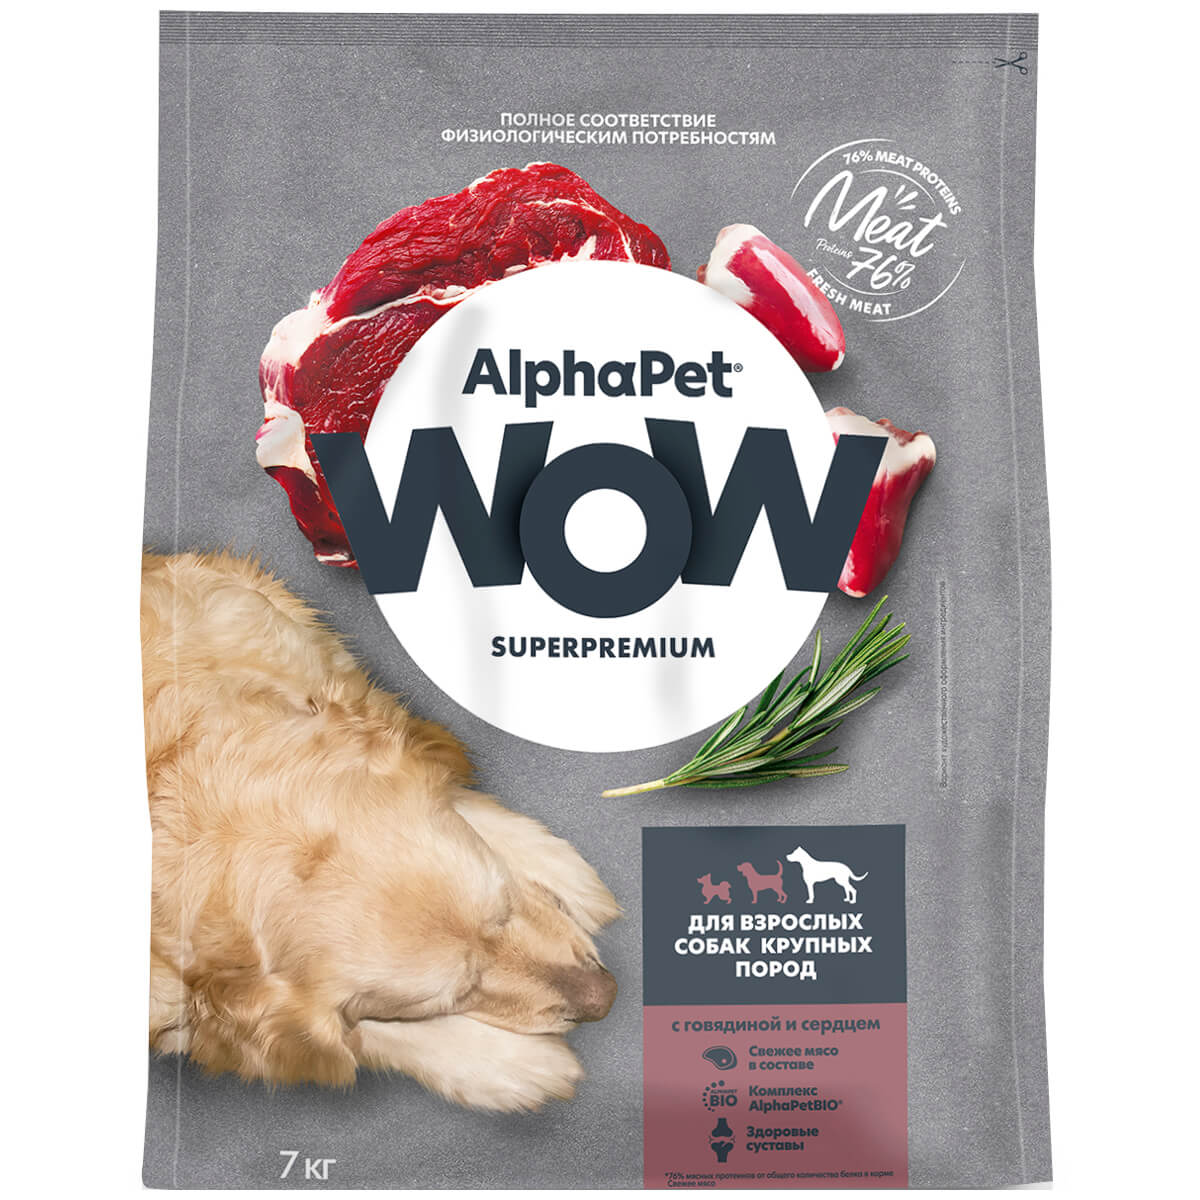 SUPERPREMIUM 7 кг сухой корм для взрослых собак крупных пород с говядиной и сердцем, ALPHAPET WOW - фото 1